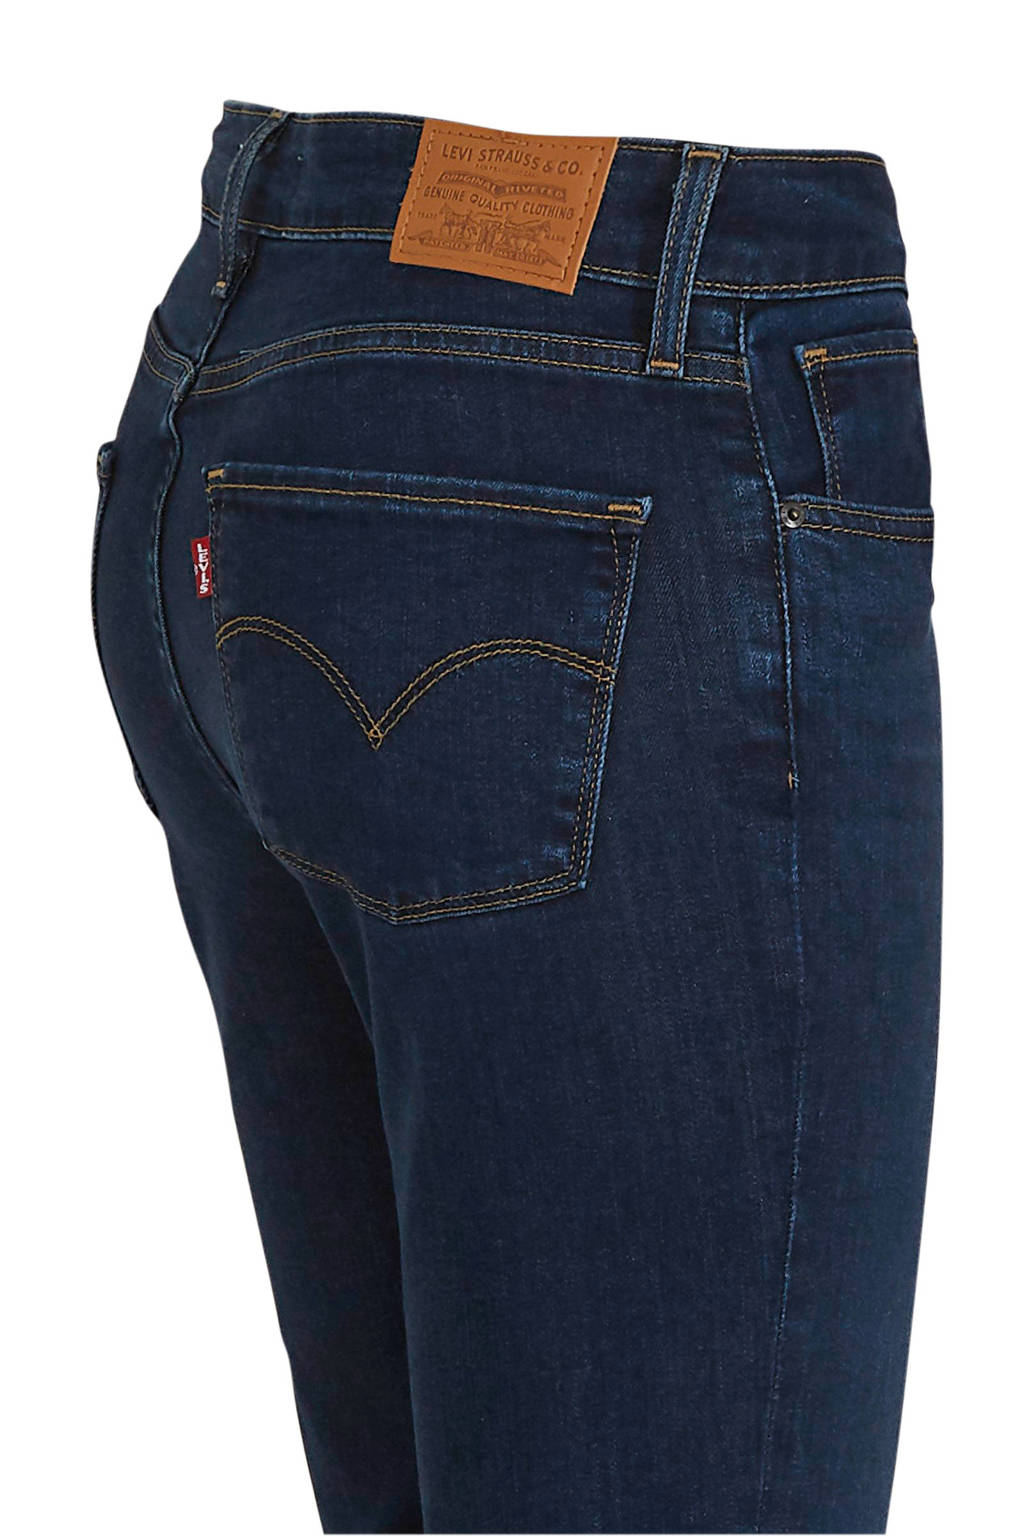 Verraad Sophie variabel Levi's 721 high waist skinny jeans bogota feels | wehkamp